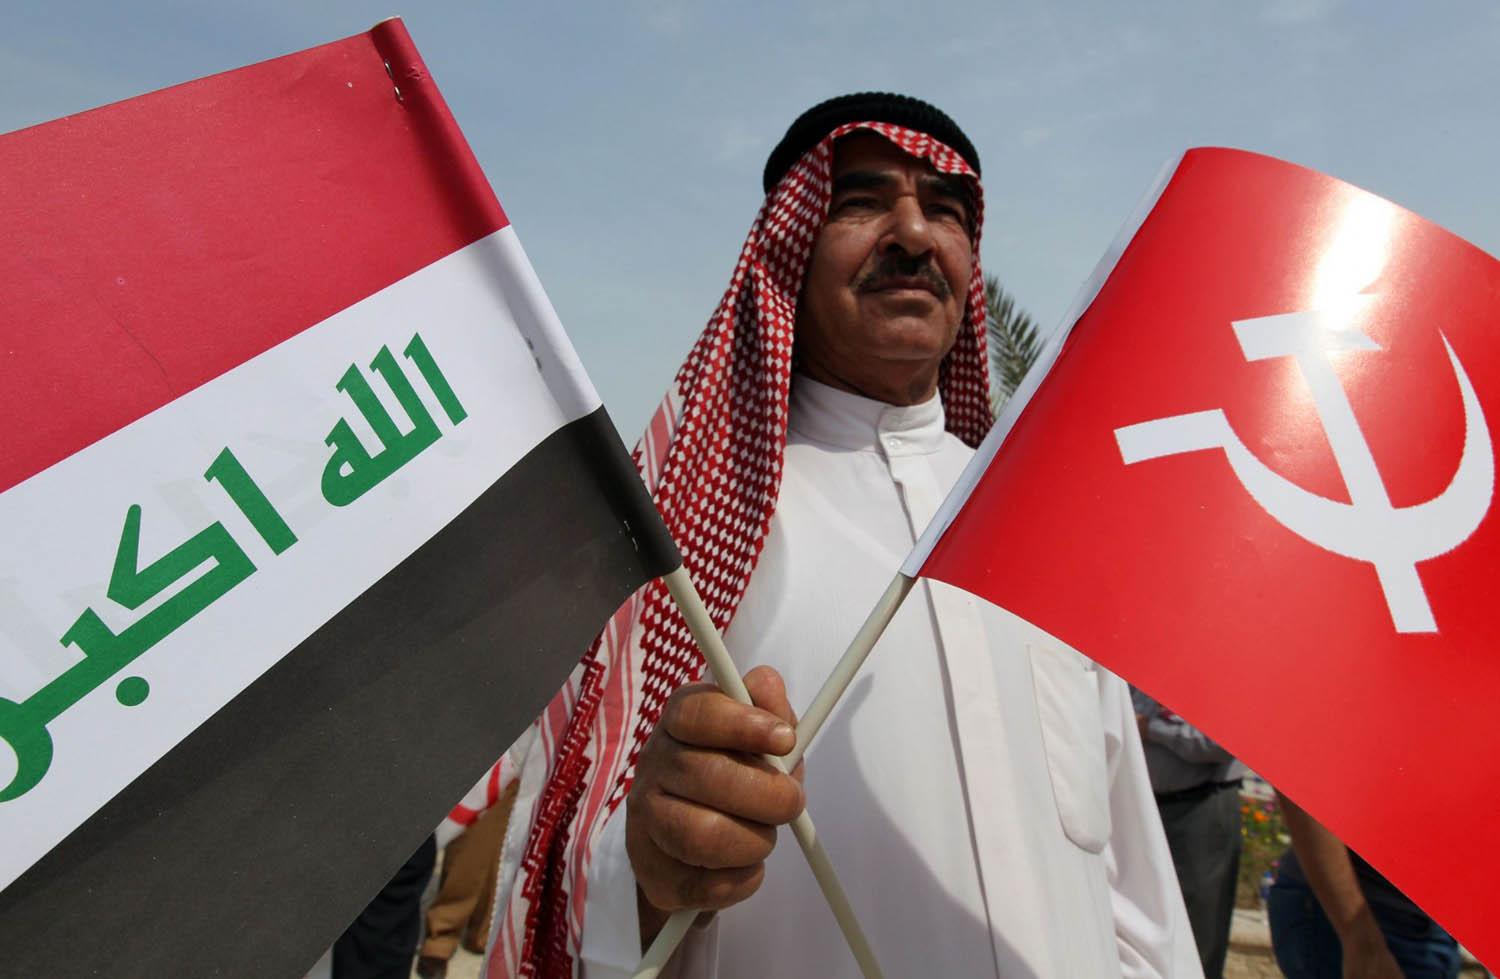 شيوعي عراقي يرفع علم الاتحاد السوفييتي السابق والعلم العراقي